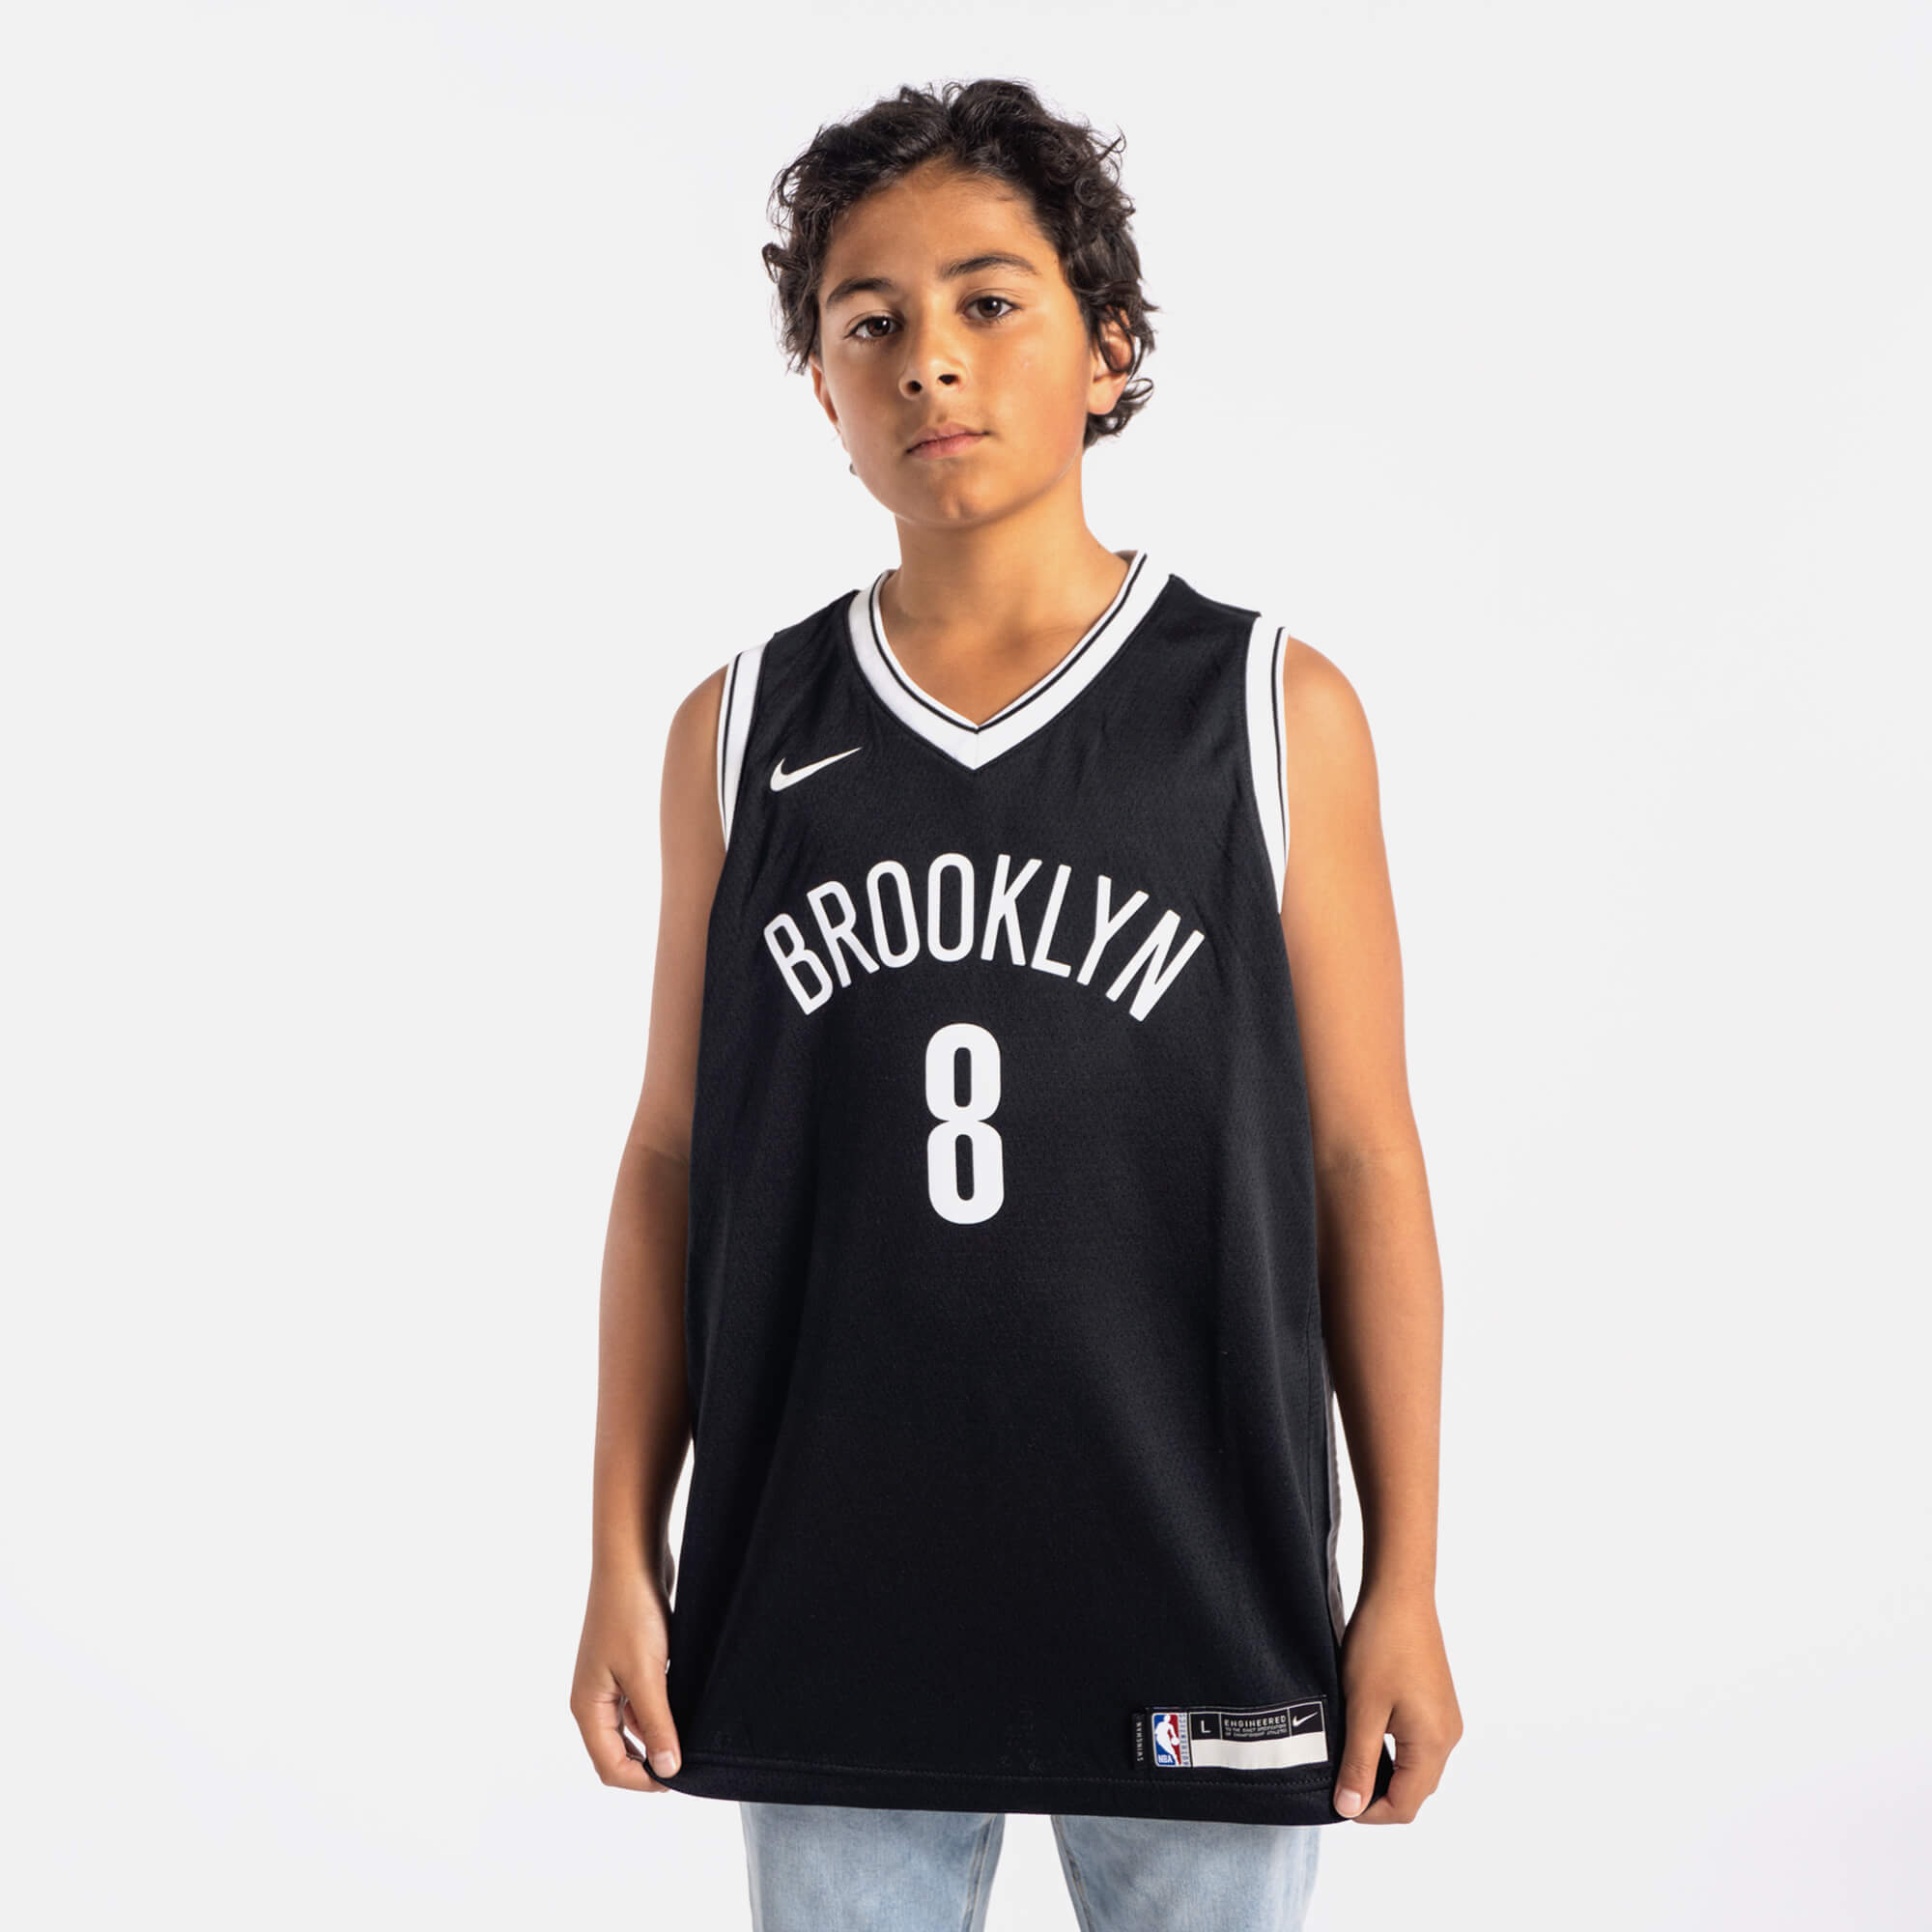 Kids Nike NBA Gear – Tagged 